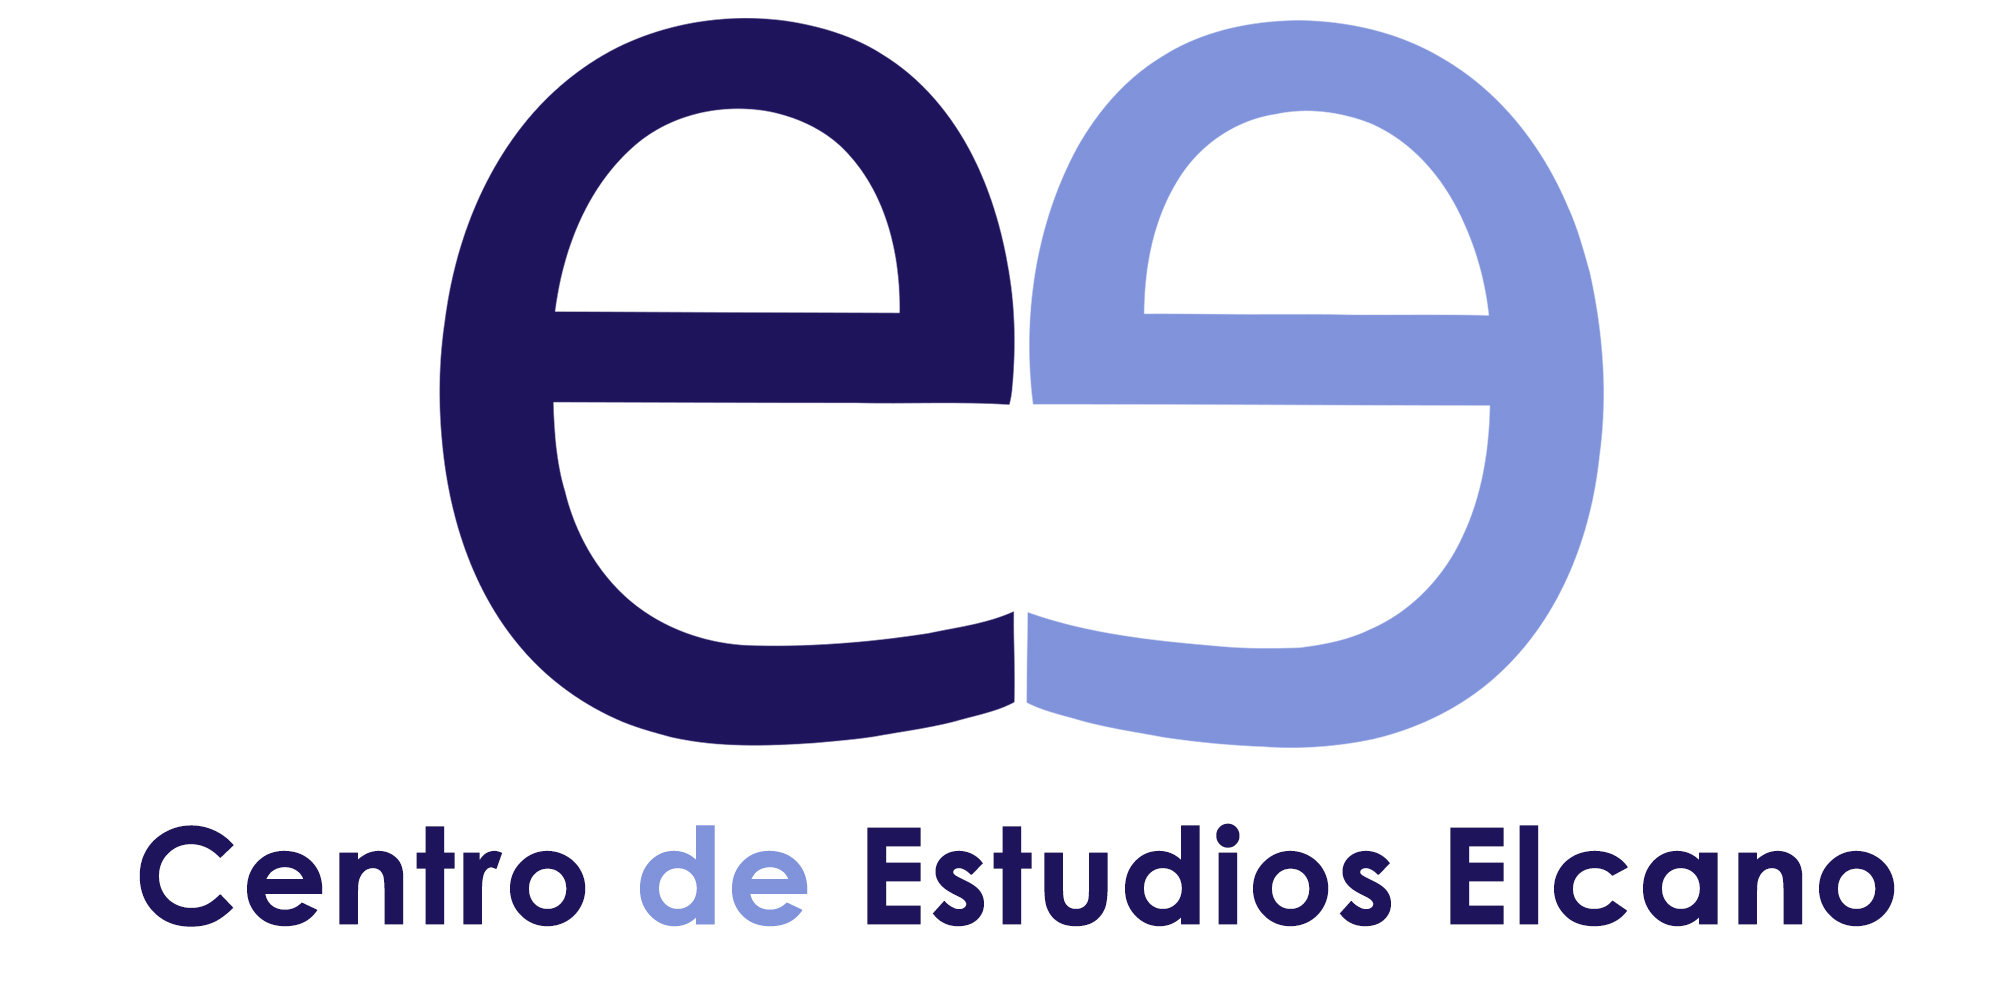 Centro de Estudios Elcano